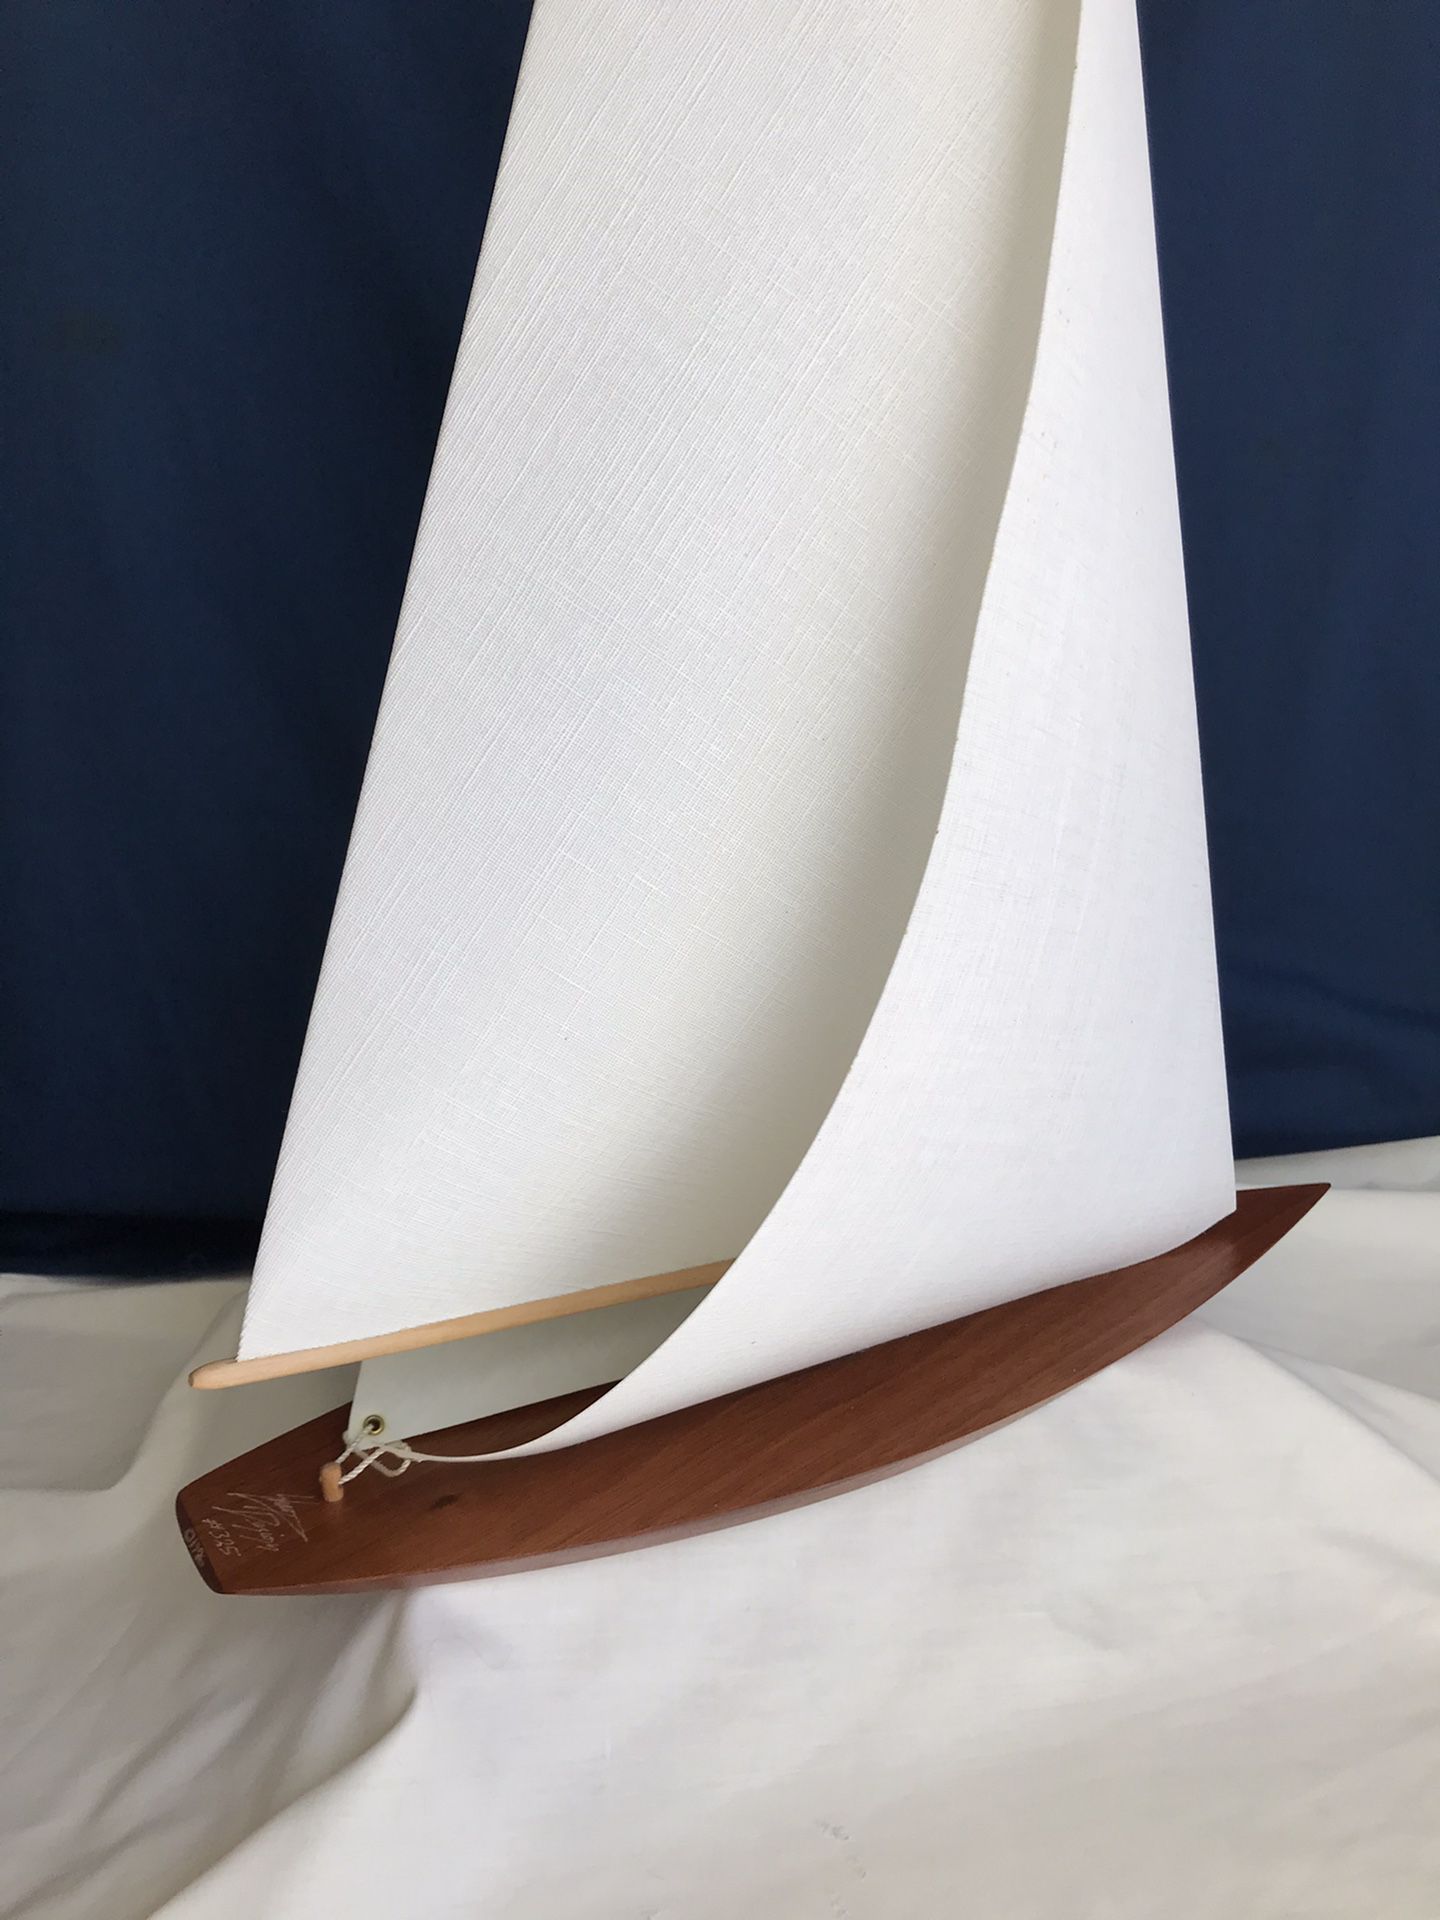 Sail Lamp (sailboat)